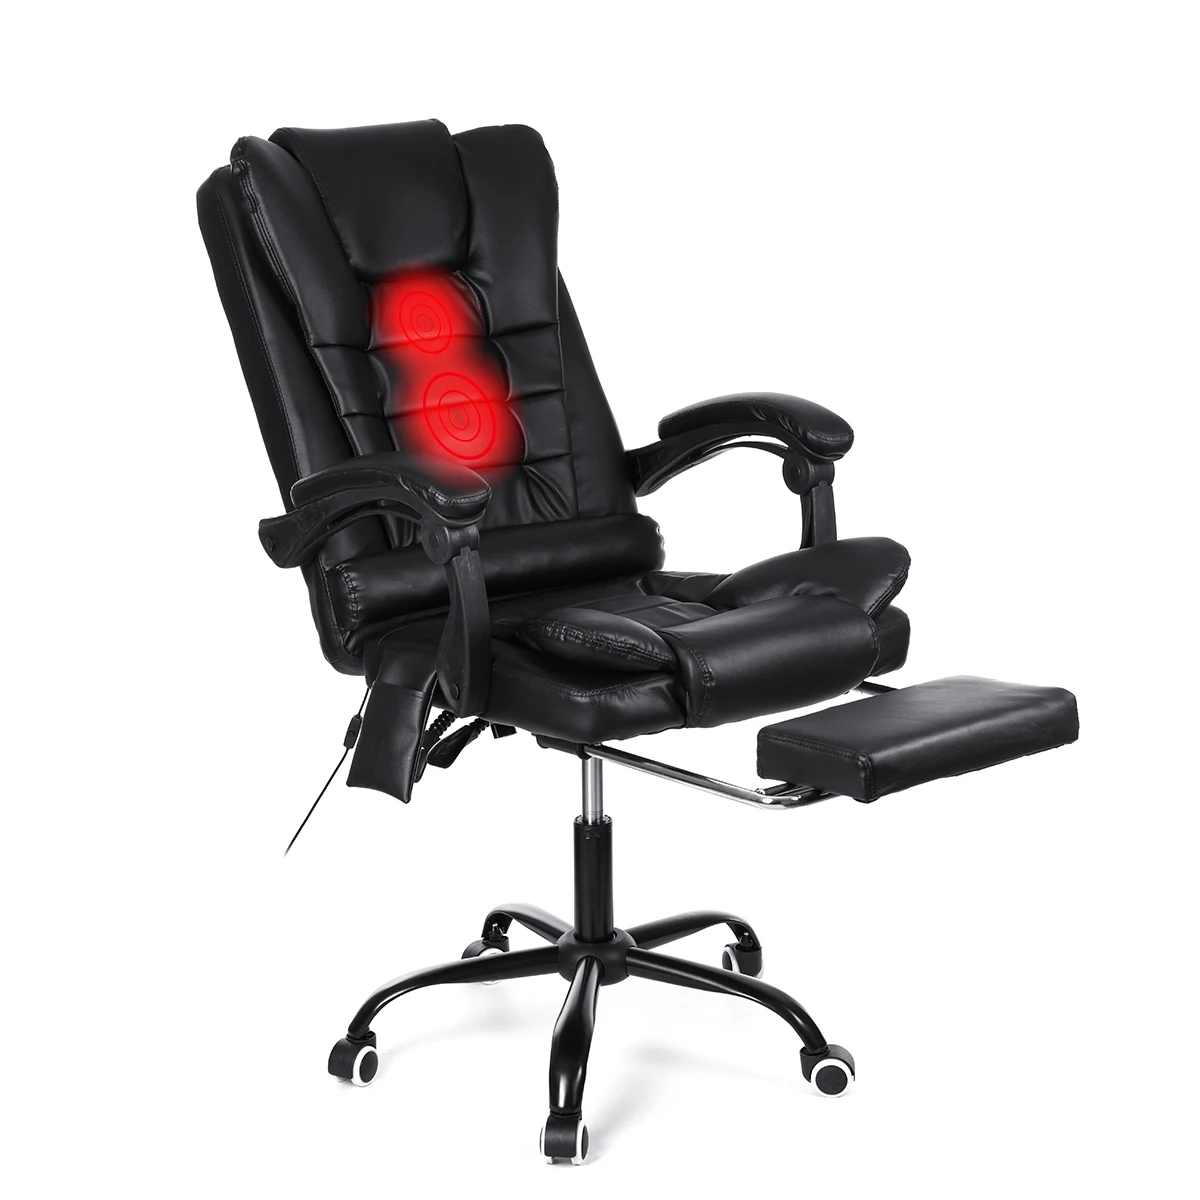 Домашний Офисный Компьютерный стол Boss массажное кресло с подставкой для ног подлокотник домашний подъемный регулируемый эргономичный откидной игровой стул